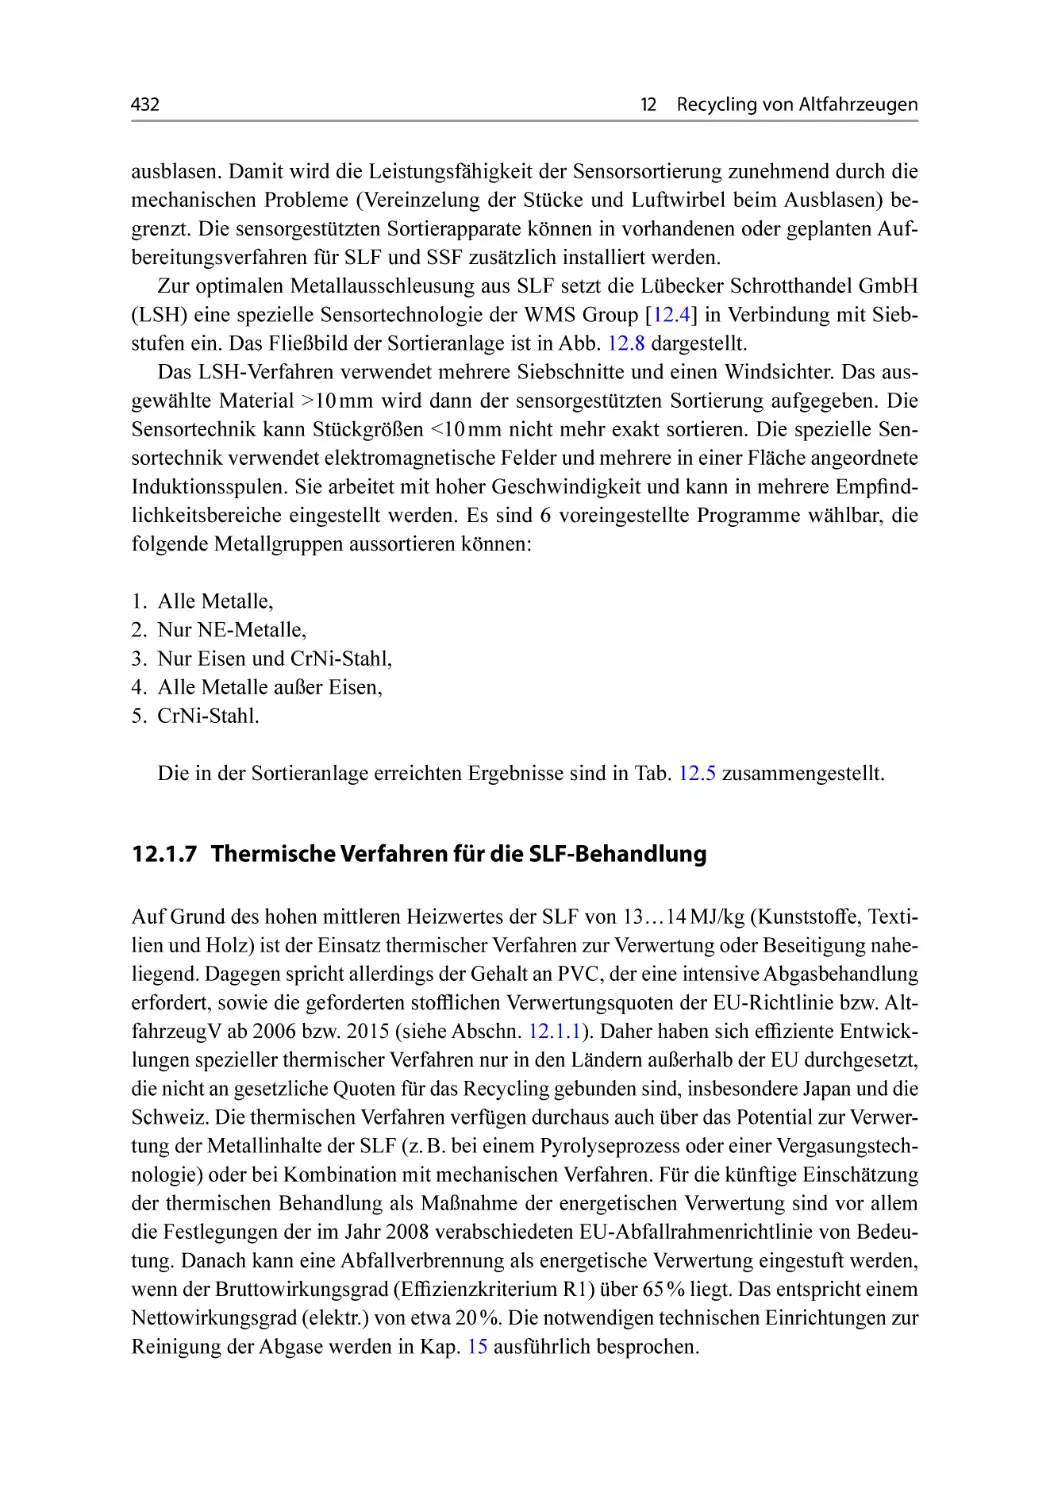 12.1.7 Thermische Verfahren für die SLF-Behandlung